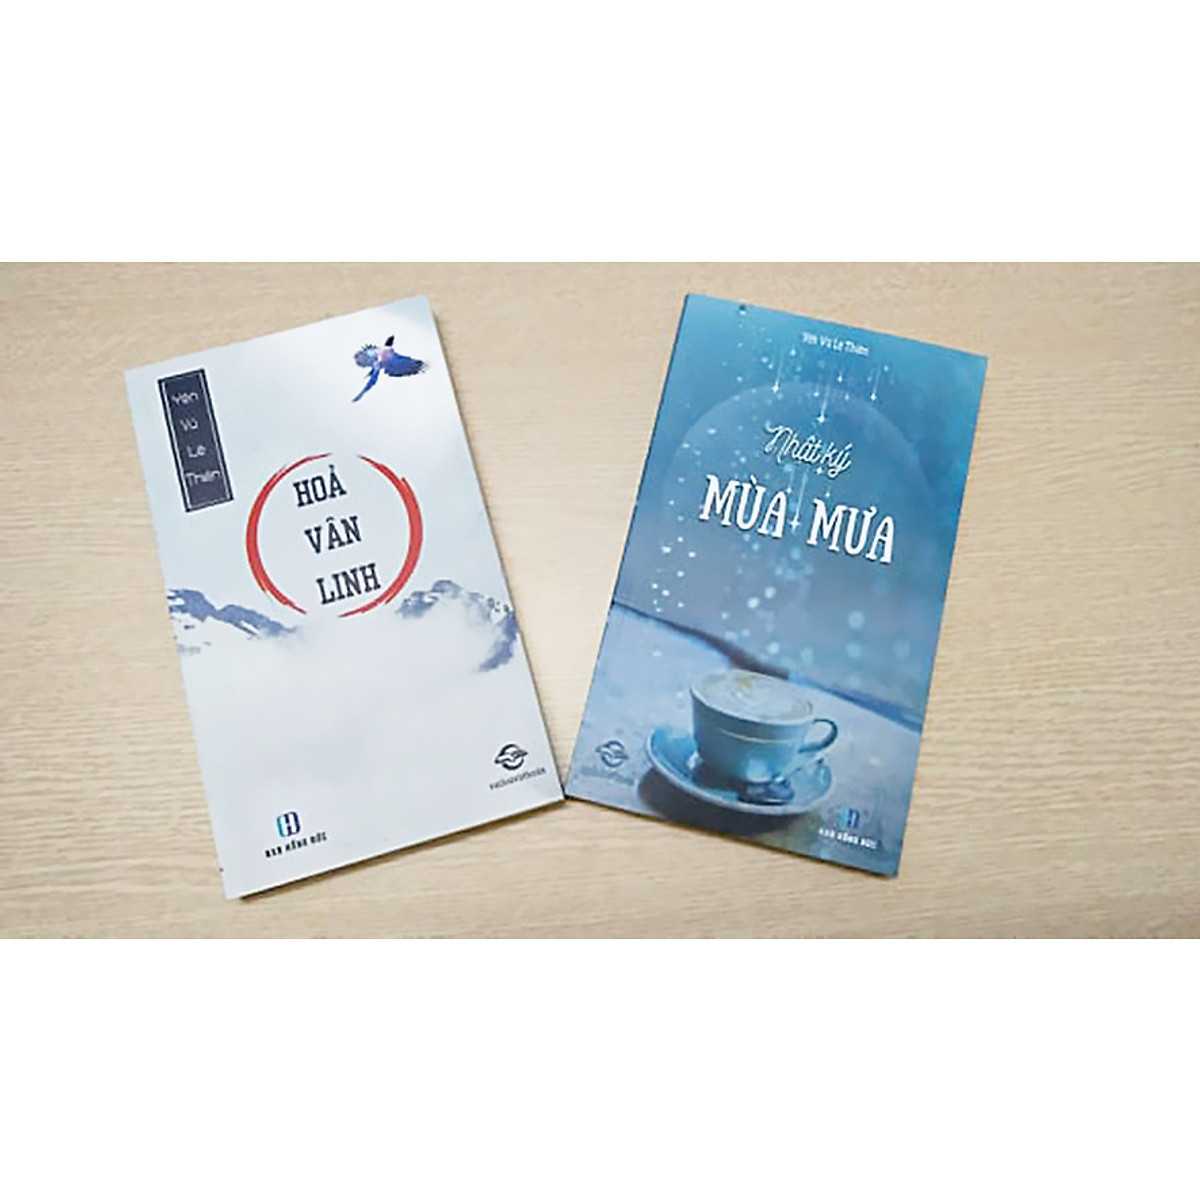 Combo 2 cuốn của Yên Vũ Lệ Thiên: Hỏa Vân Linh + Nhật ký mùa mưa